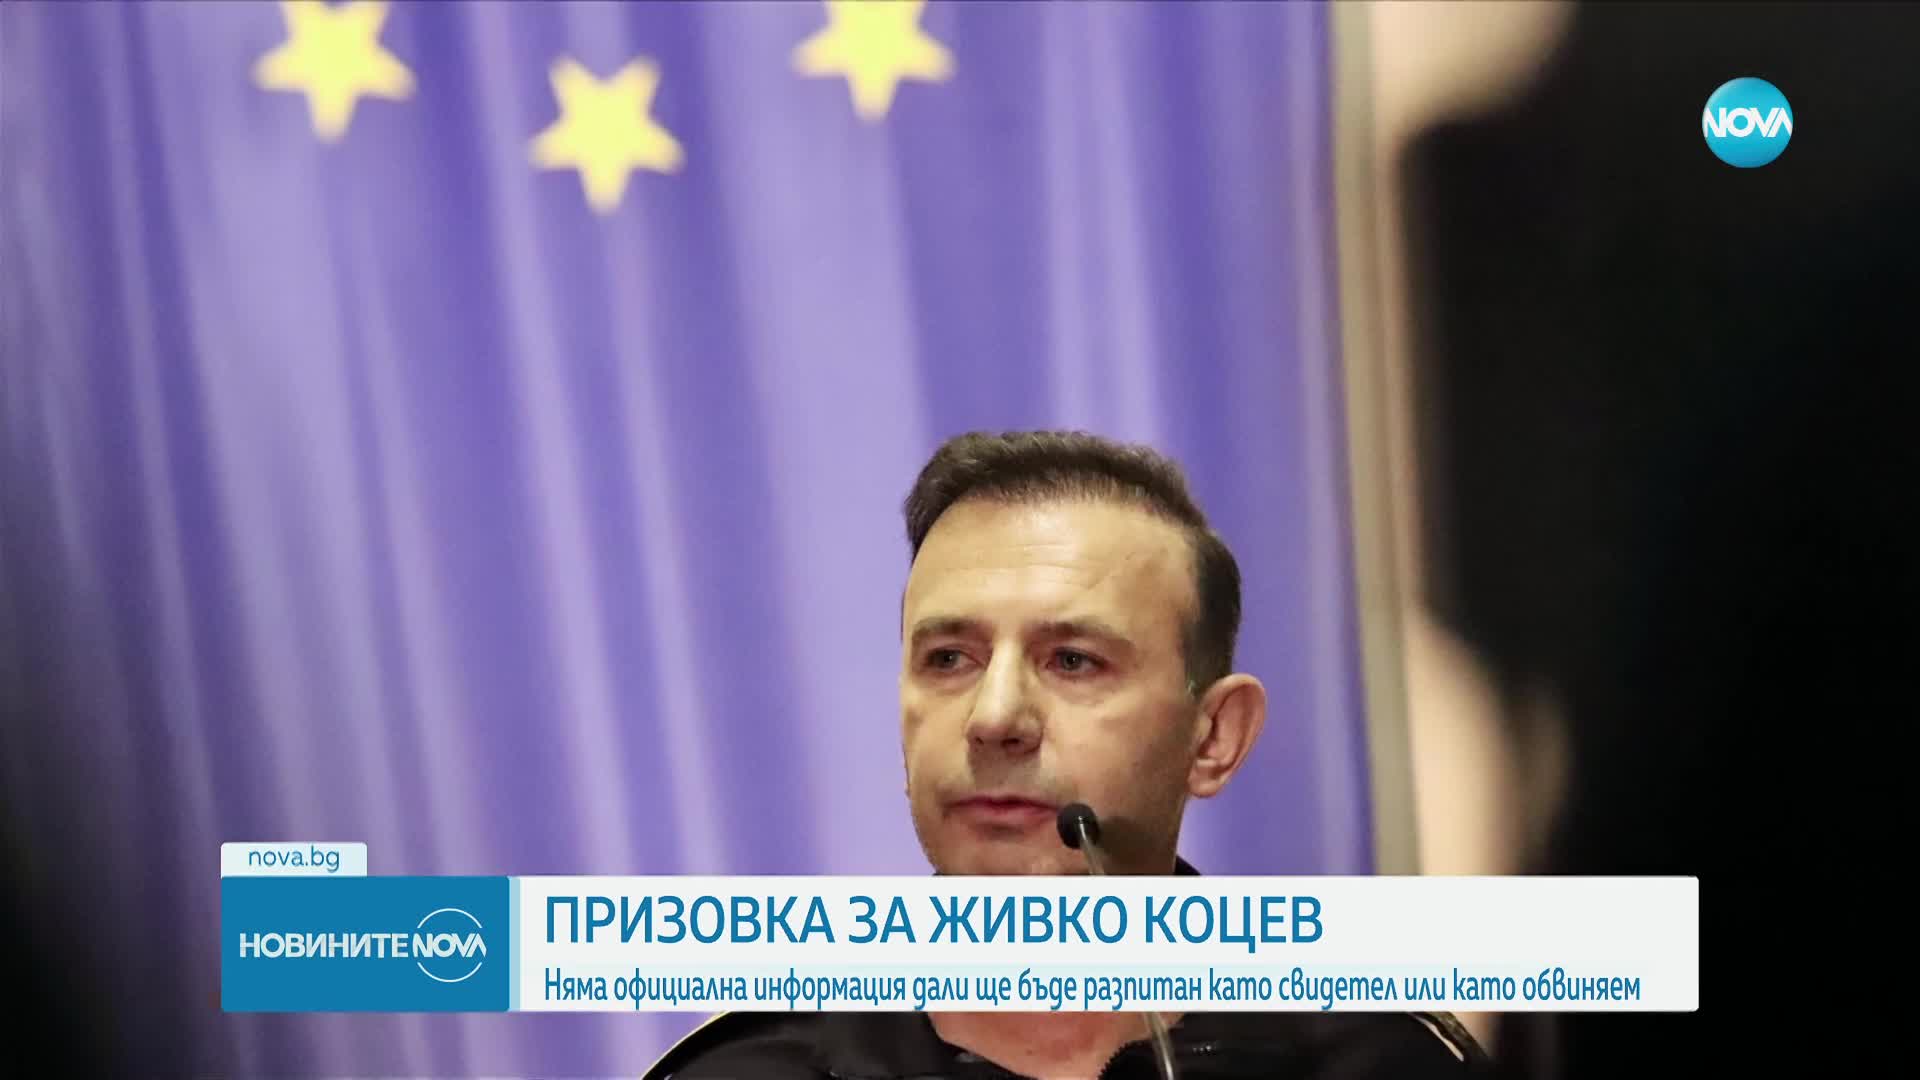 Очаква се Живко Коцев да бъде разпитан от Комисията за противодействие на корупцията